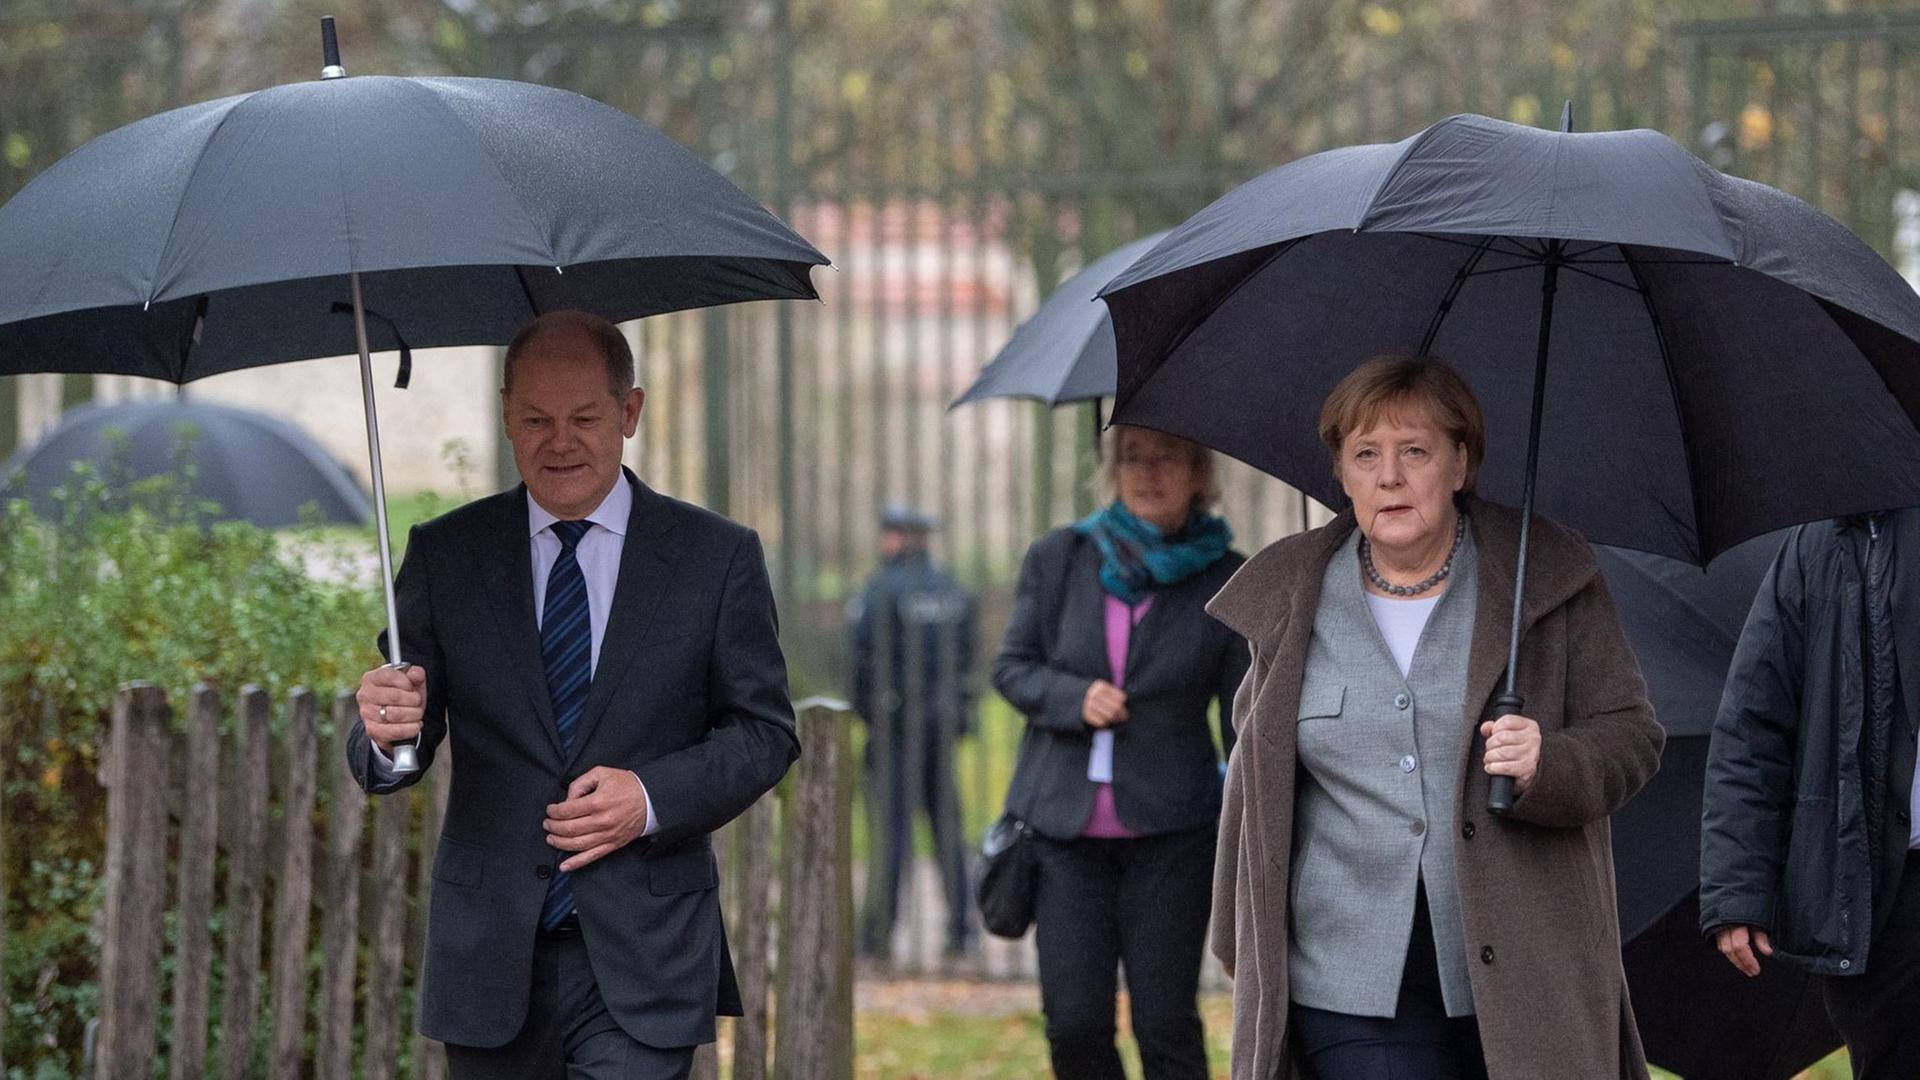 Das Foto zeigt Bundeskanzlerin Angela Merkel und Olaf Scholz, Bundesfinanzminister, auf dem Weg zu einer Pressekonferenz nach dem Abschluss der Klausurtagung des Bundeskabinetts im Schloss Meseberg.